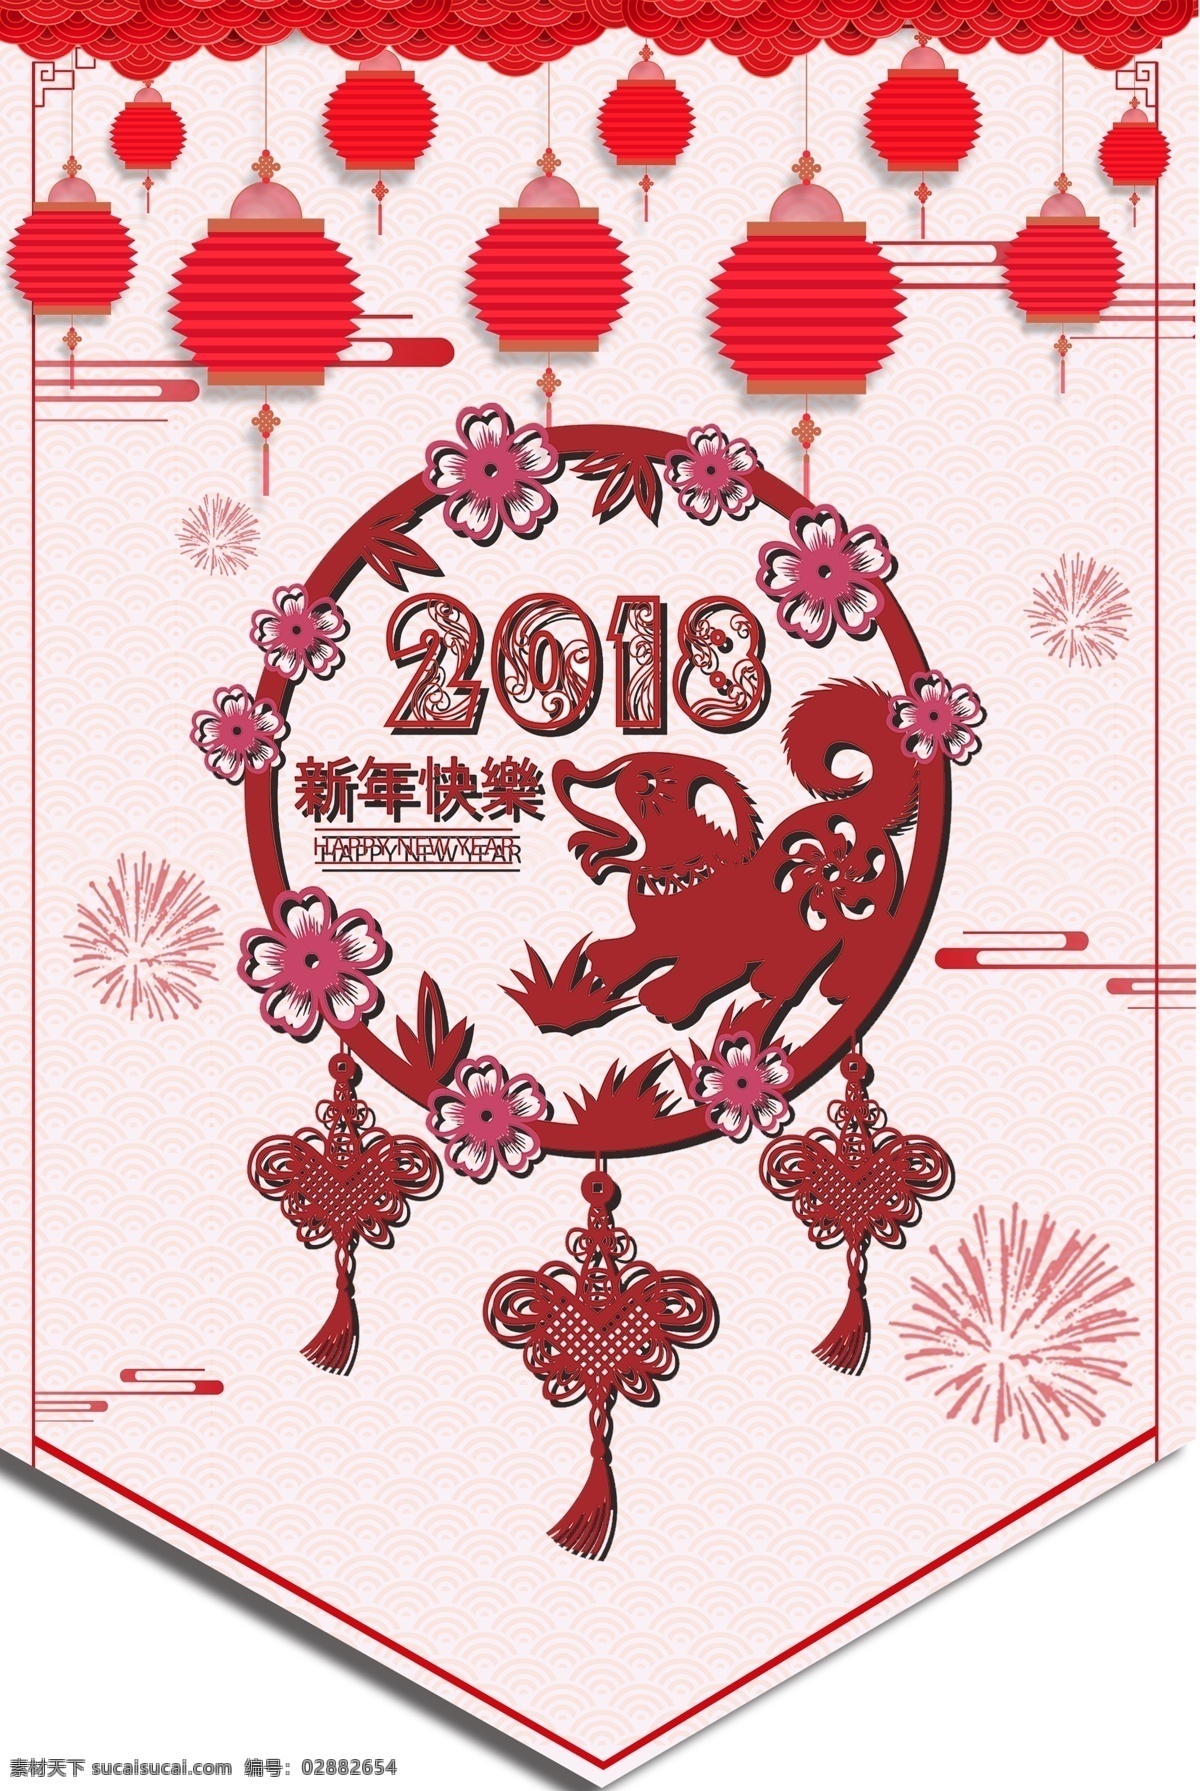 新年快乐宣传 2020 新年快乐 辞旧迎新 鼠年 春节 恭贺新春 元旦